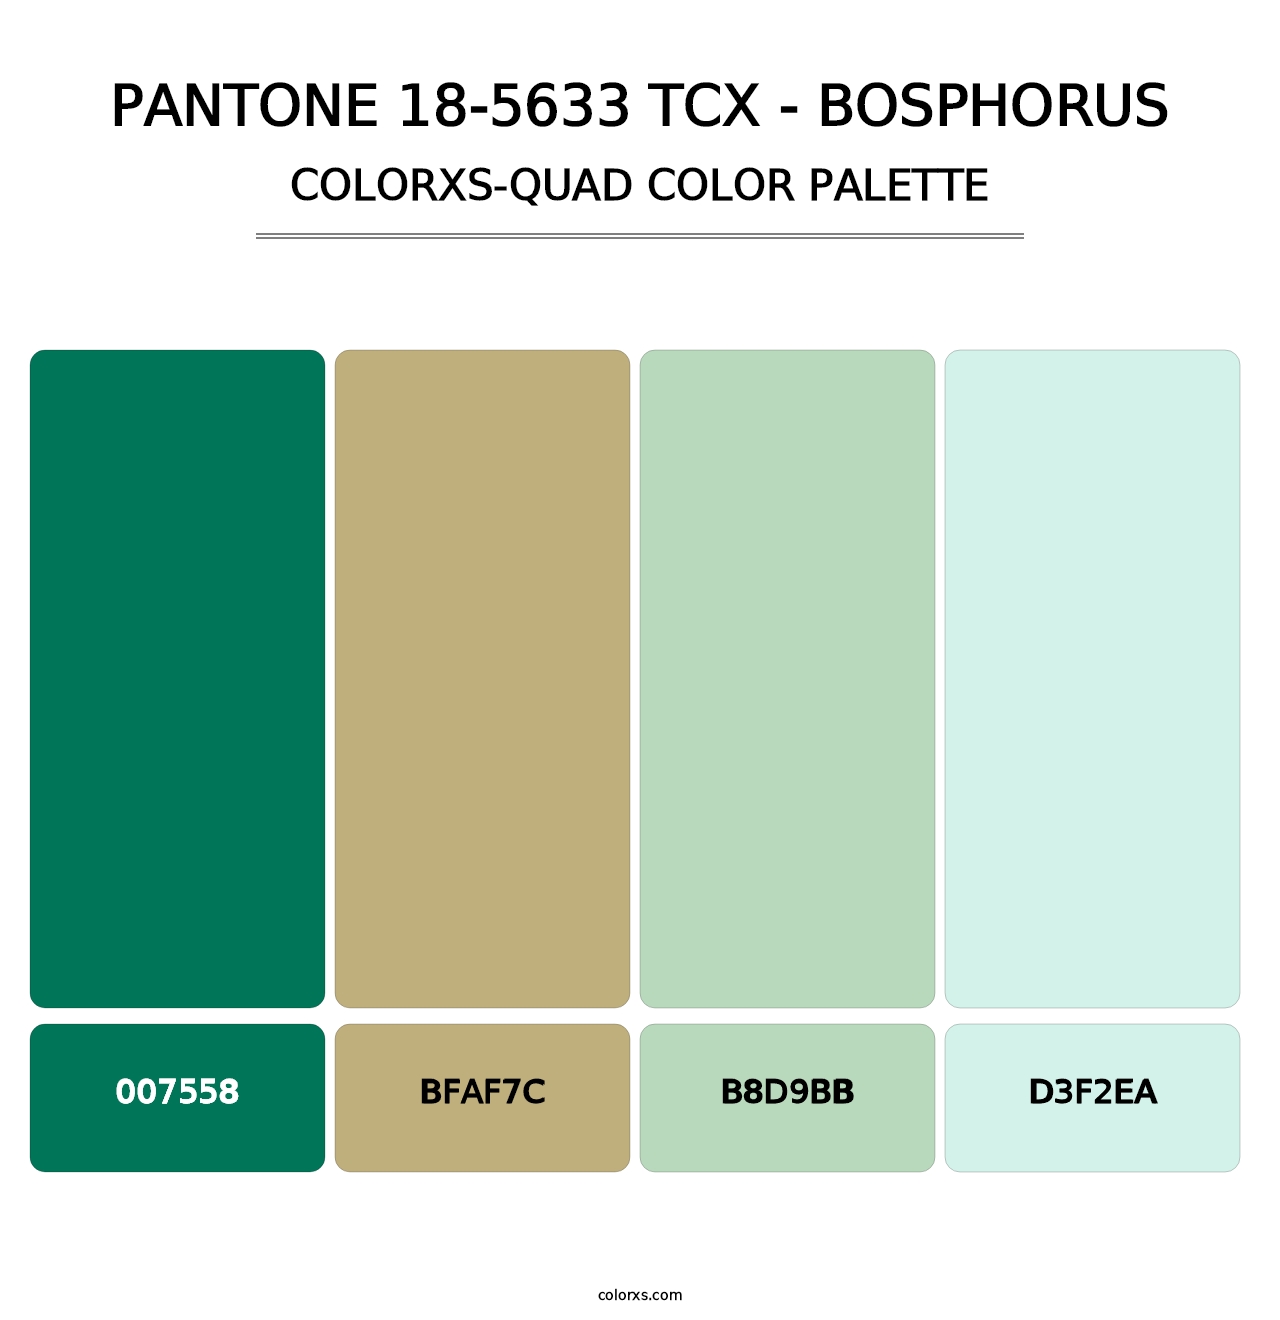 PANTONE 18-5633 TCX - Bosphorus - Colorxs Quad Palette